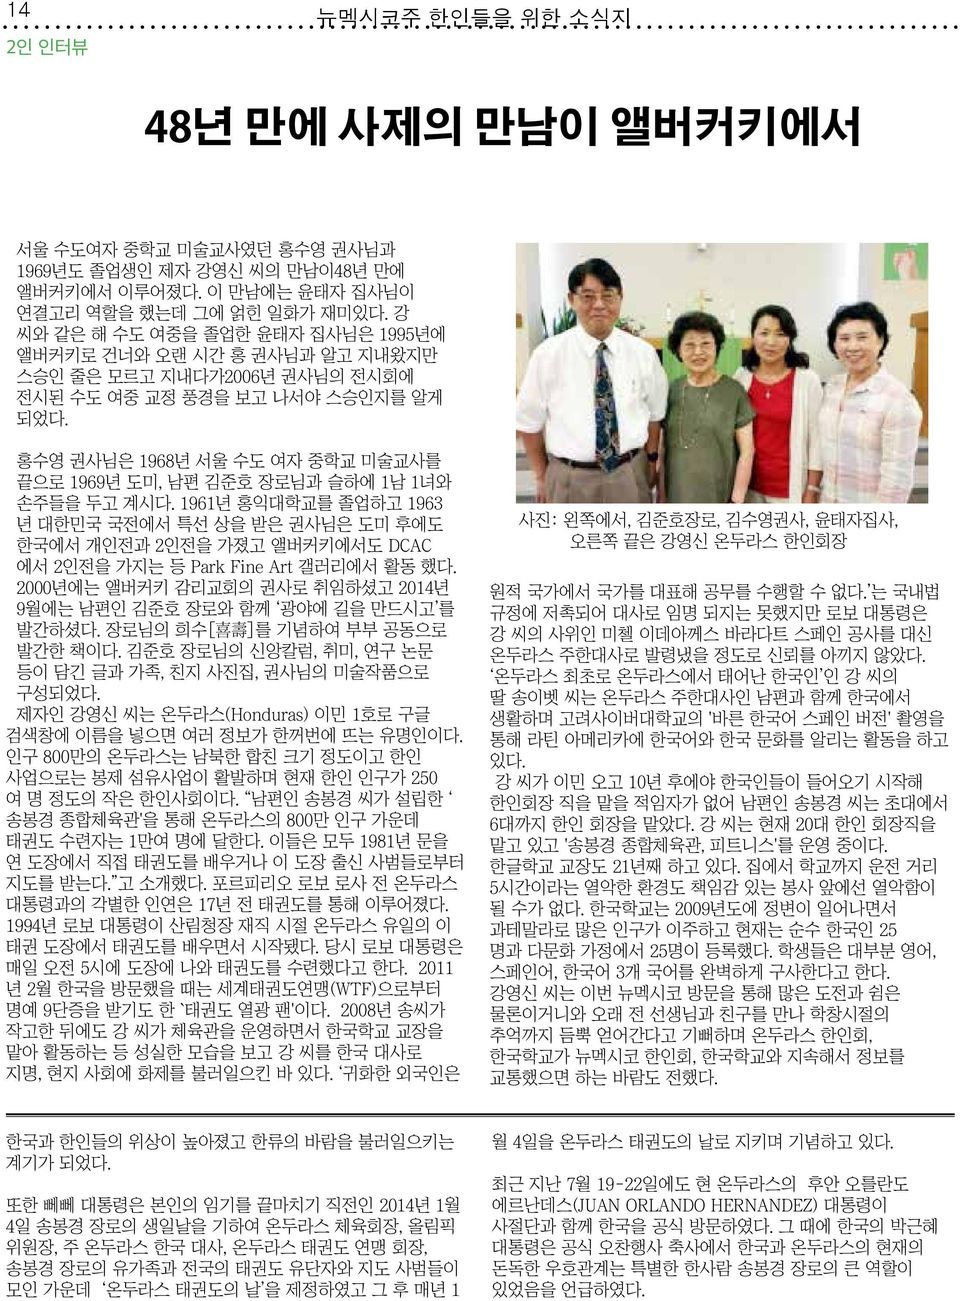 홍수영 권사님은 1968년 서울 수도 여자 중학교 미술교사를 끝으로 1969년 도미, 남편 김준호 장로님과 슬하에 1남 1녀와 손주들을 두고 계시다.